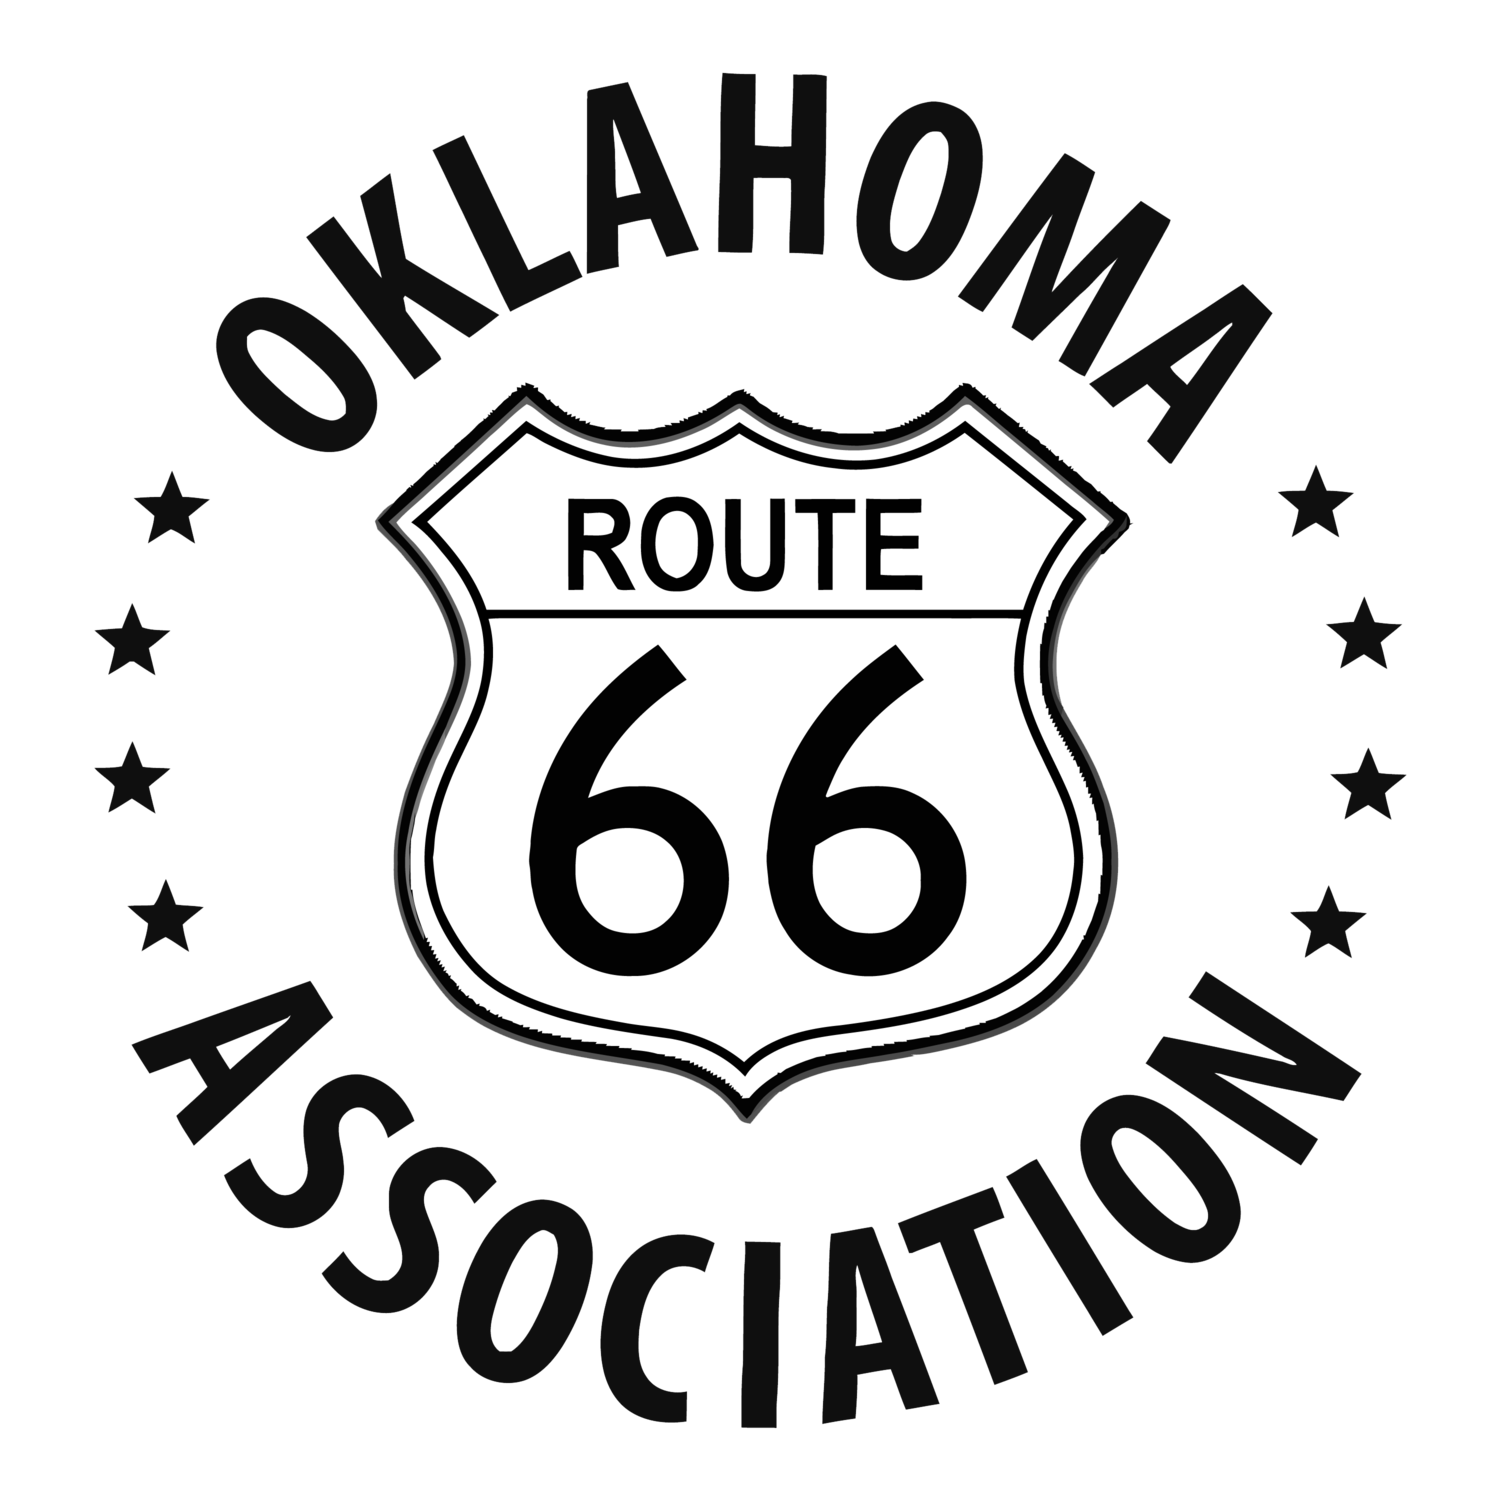 oklahoma route 66 association